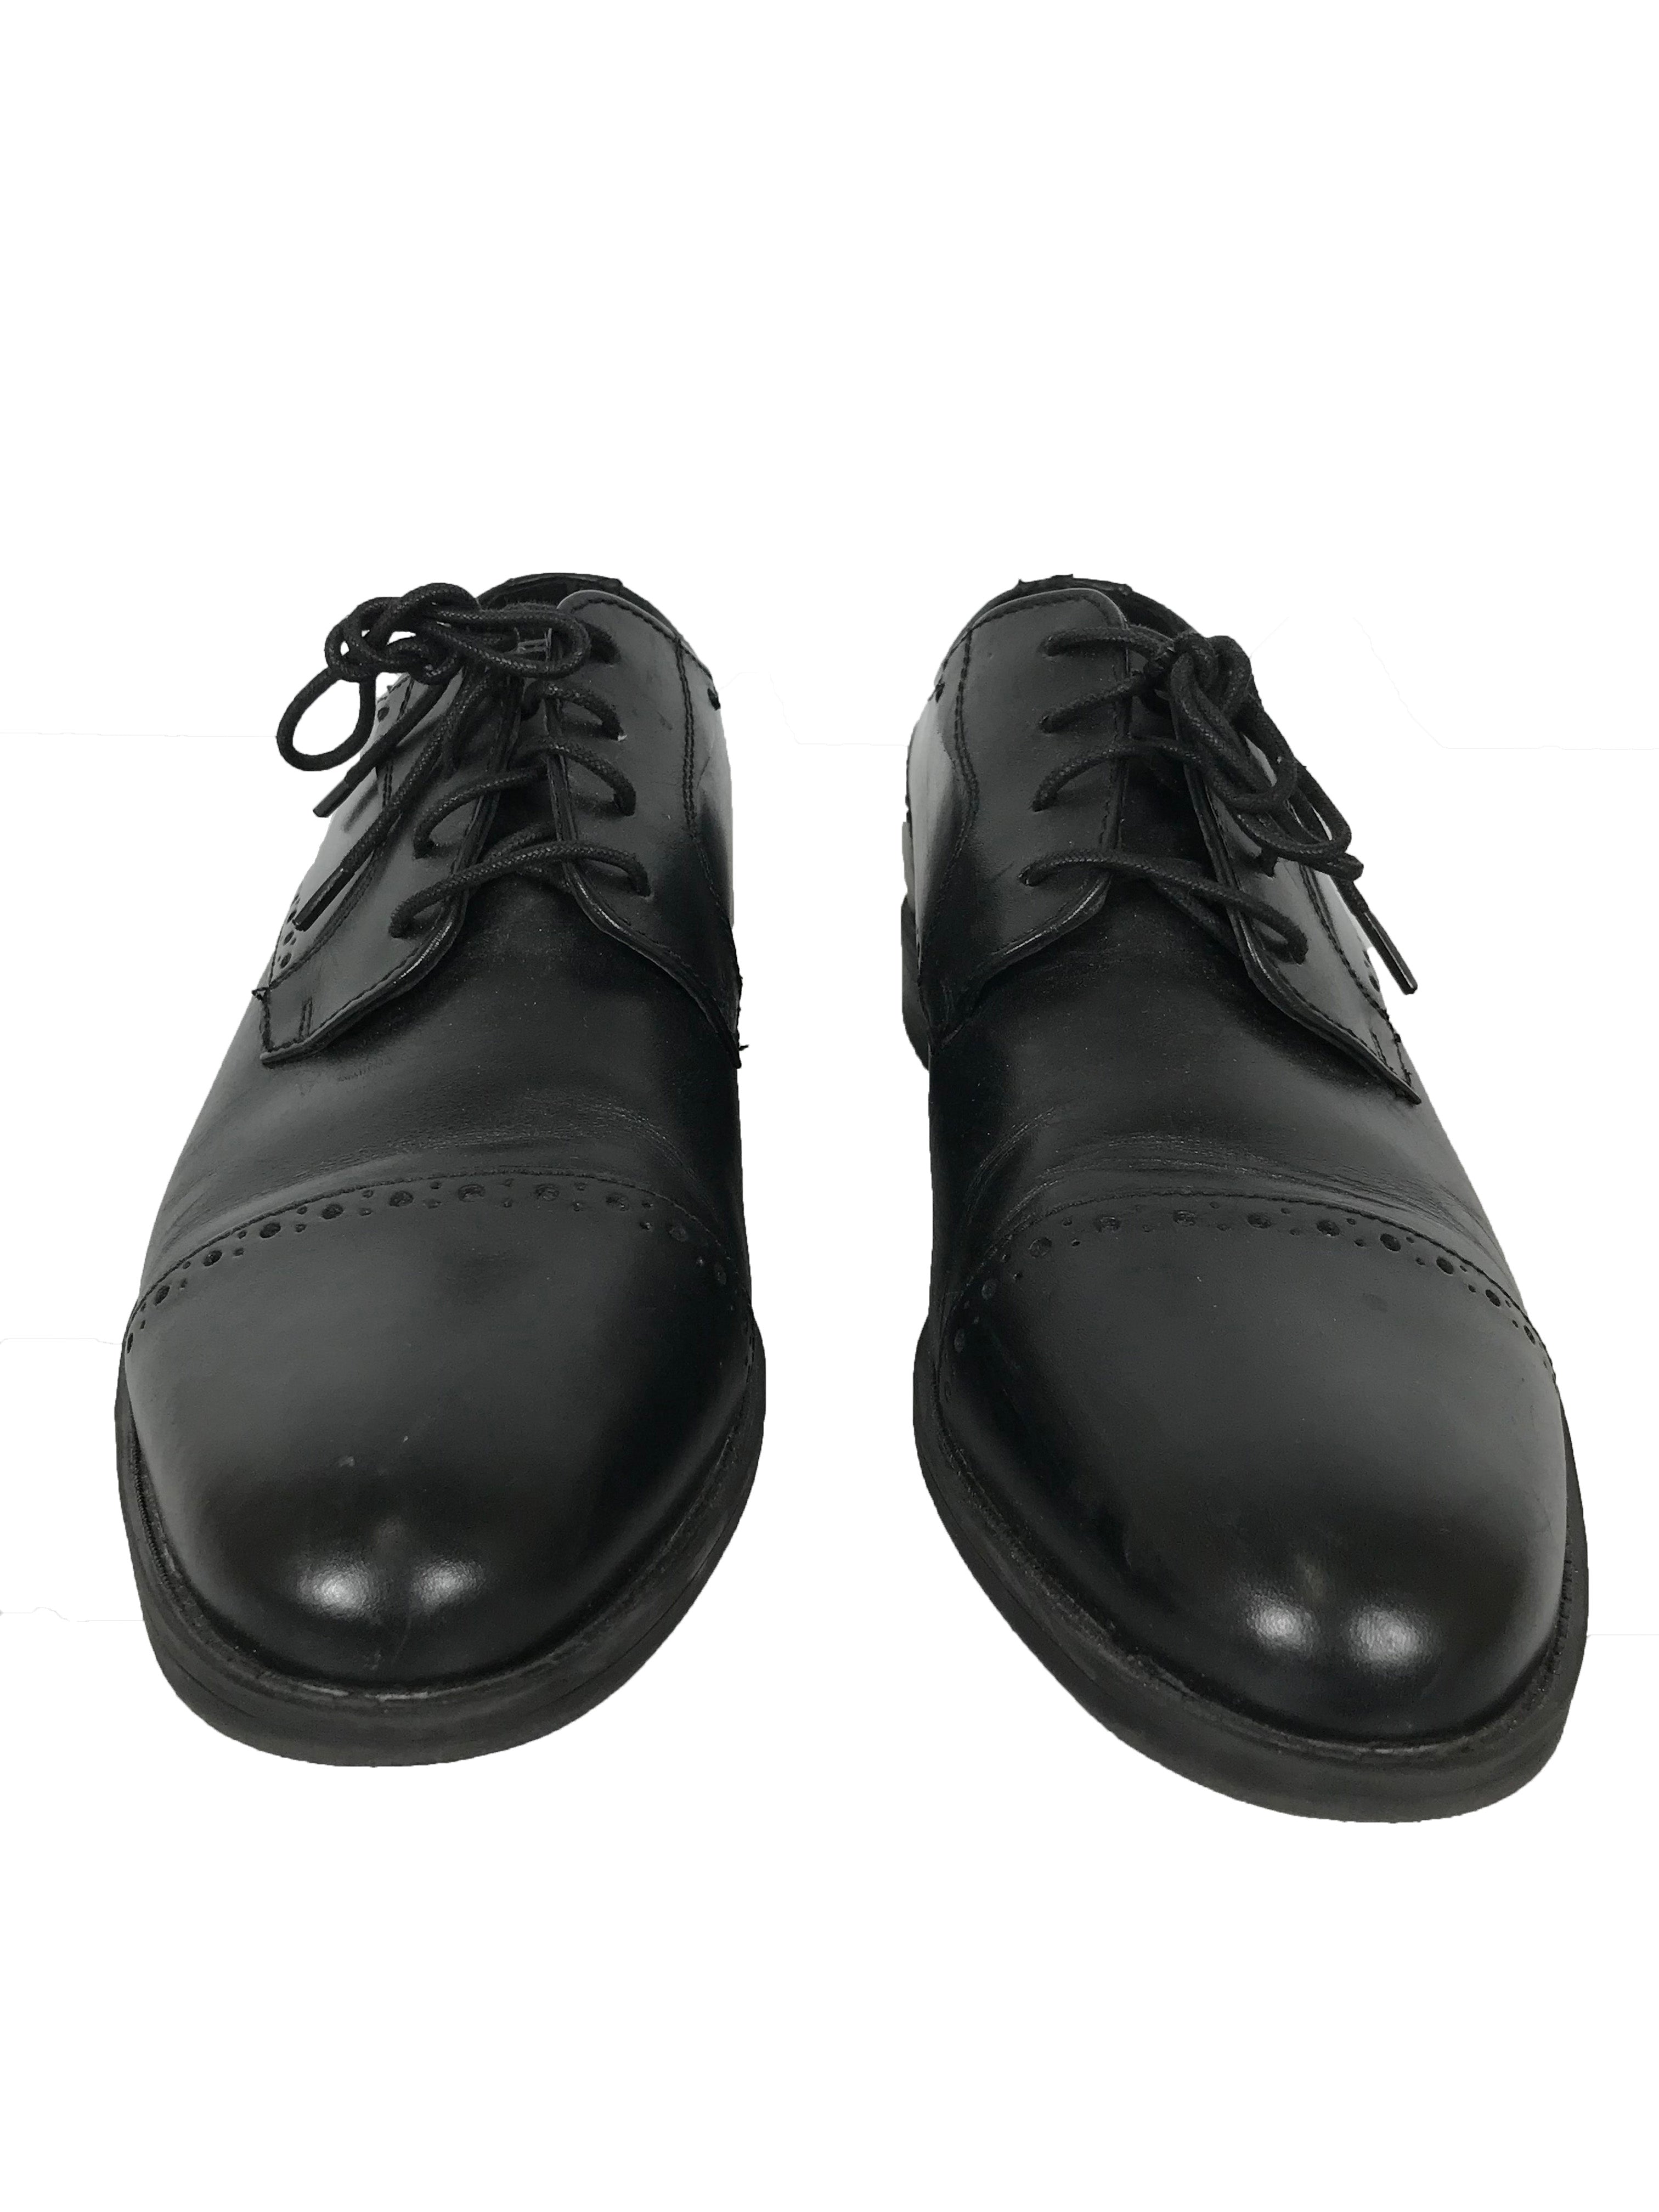 Stacy Adams Black Dress Shoes Men's Size 10.5